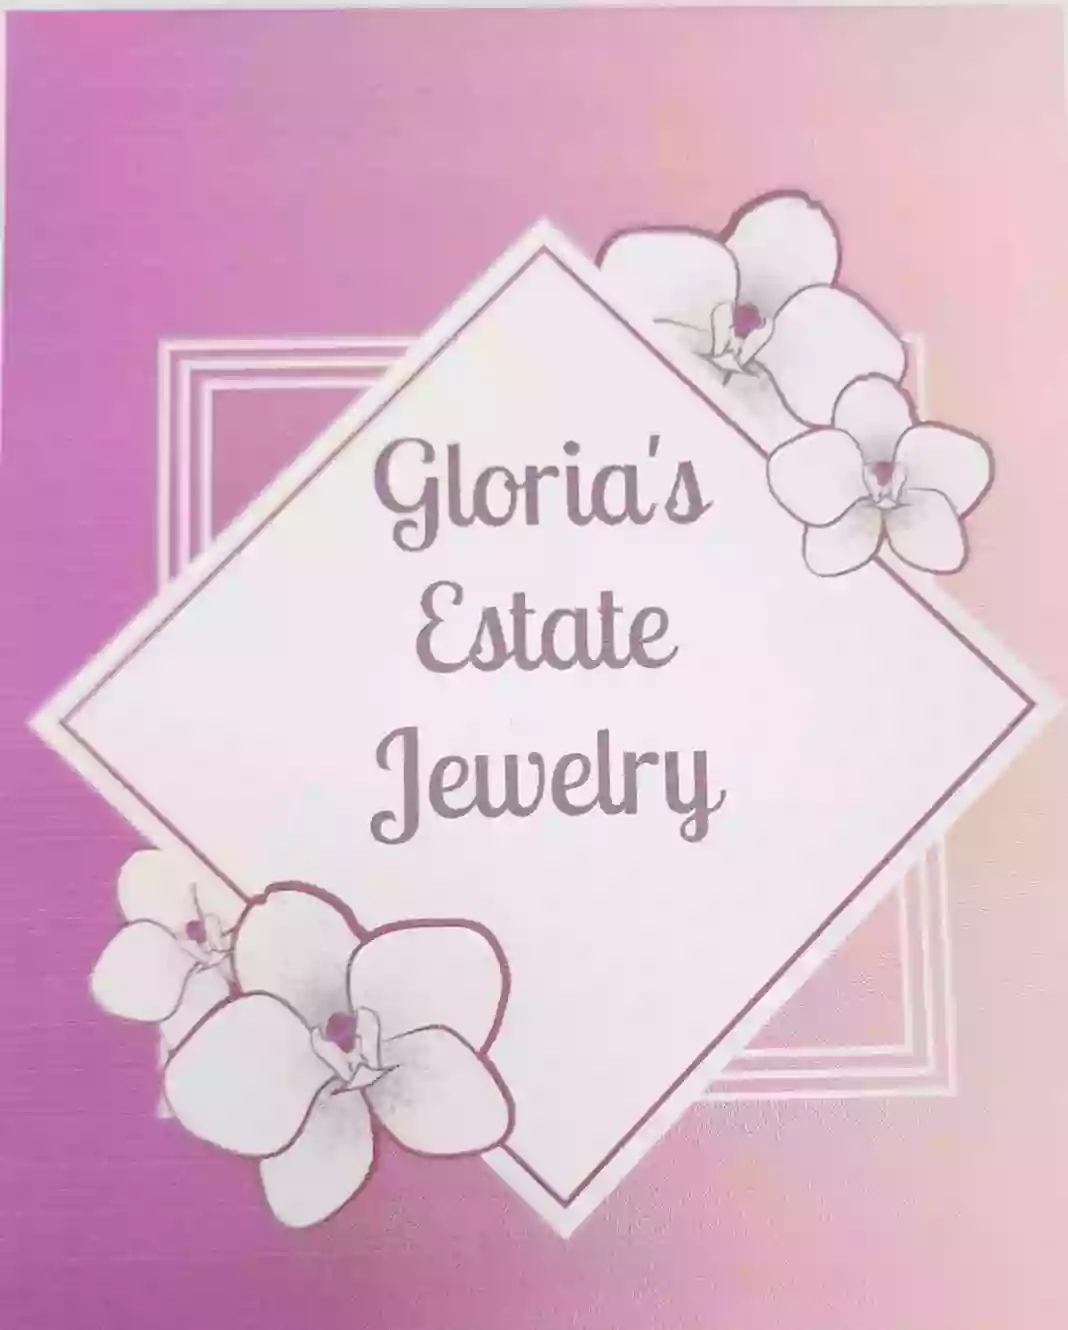 Glorias Estate Jewelry